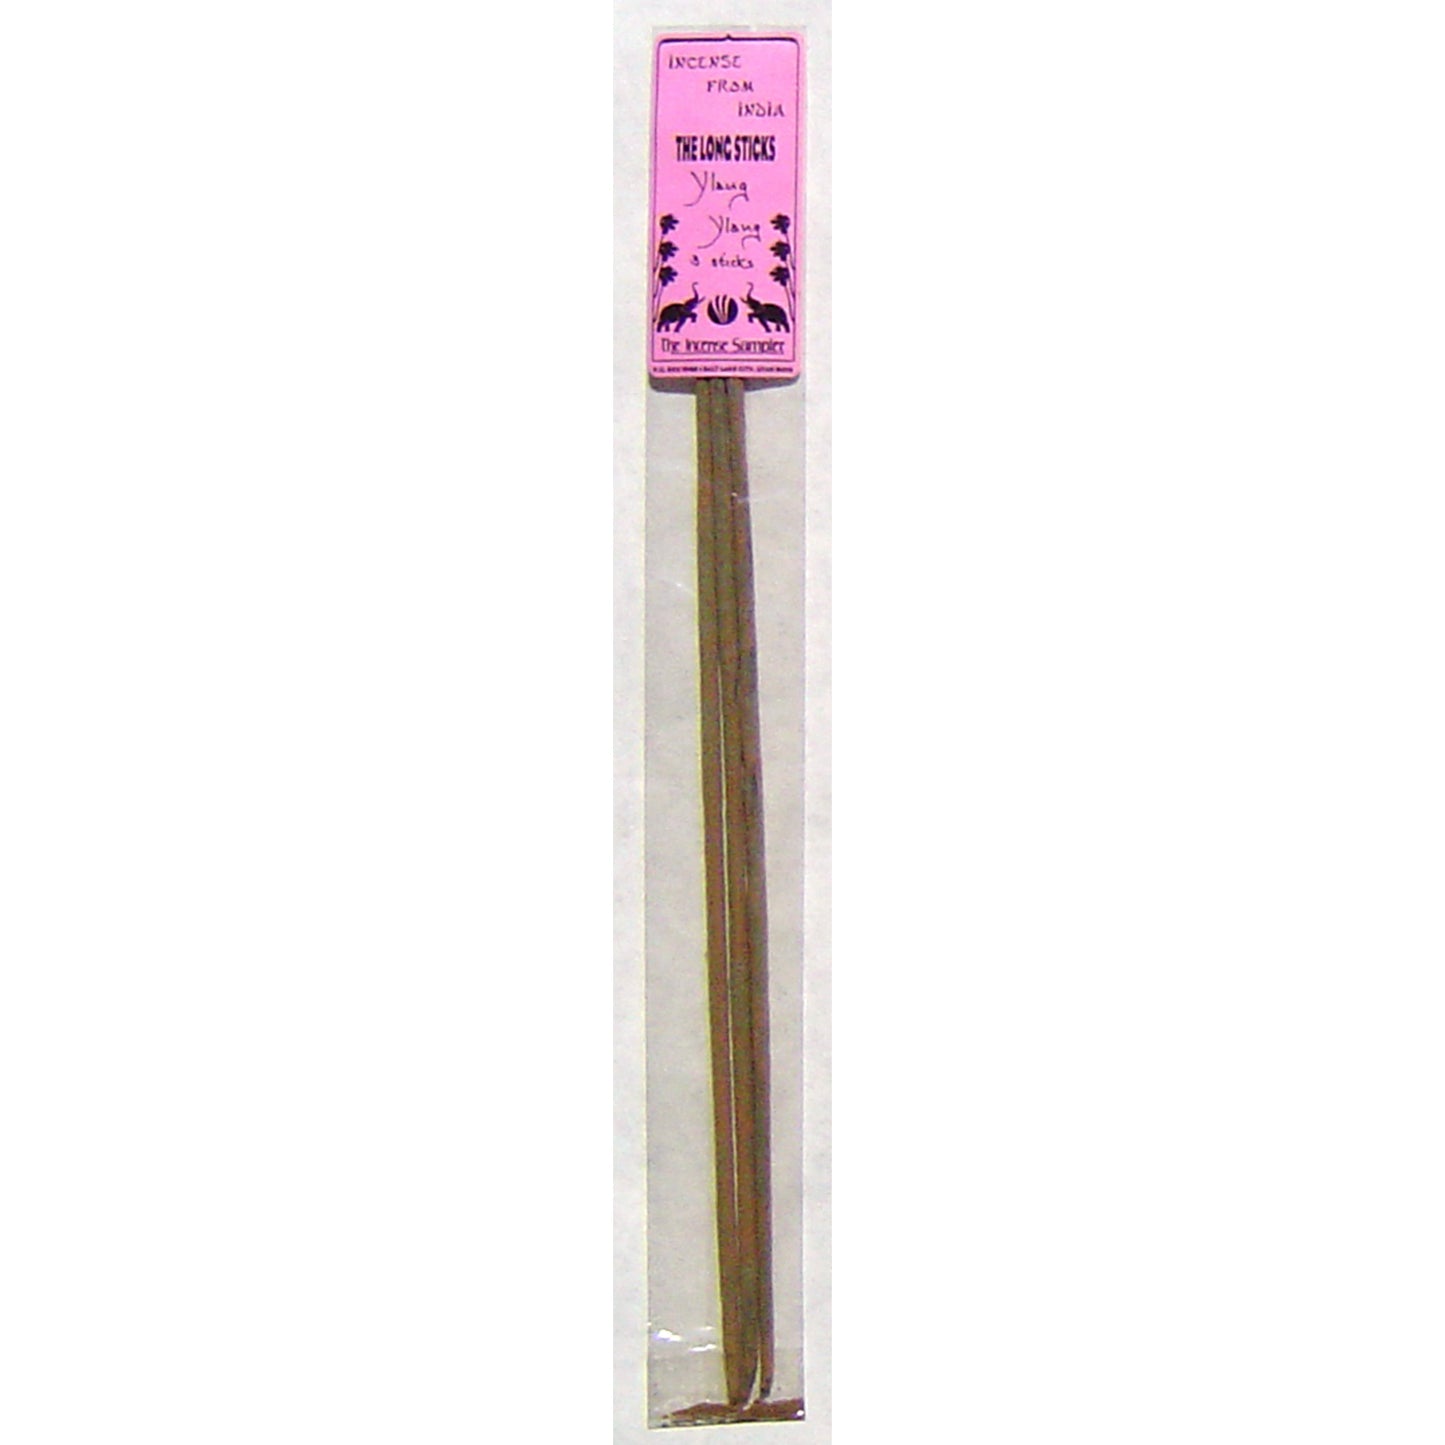 Incense From India - Ylang Ylang, 15" Garden Sticks